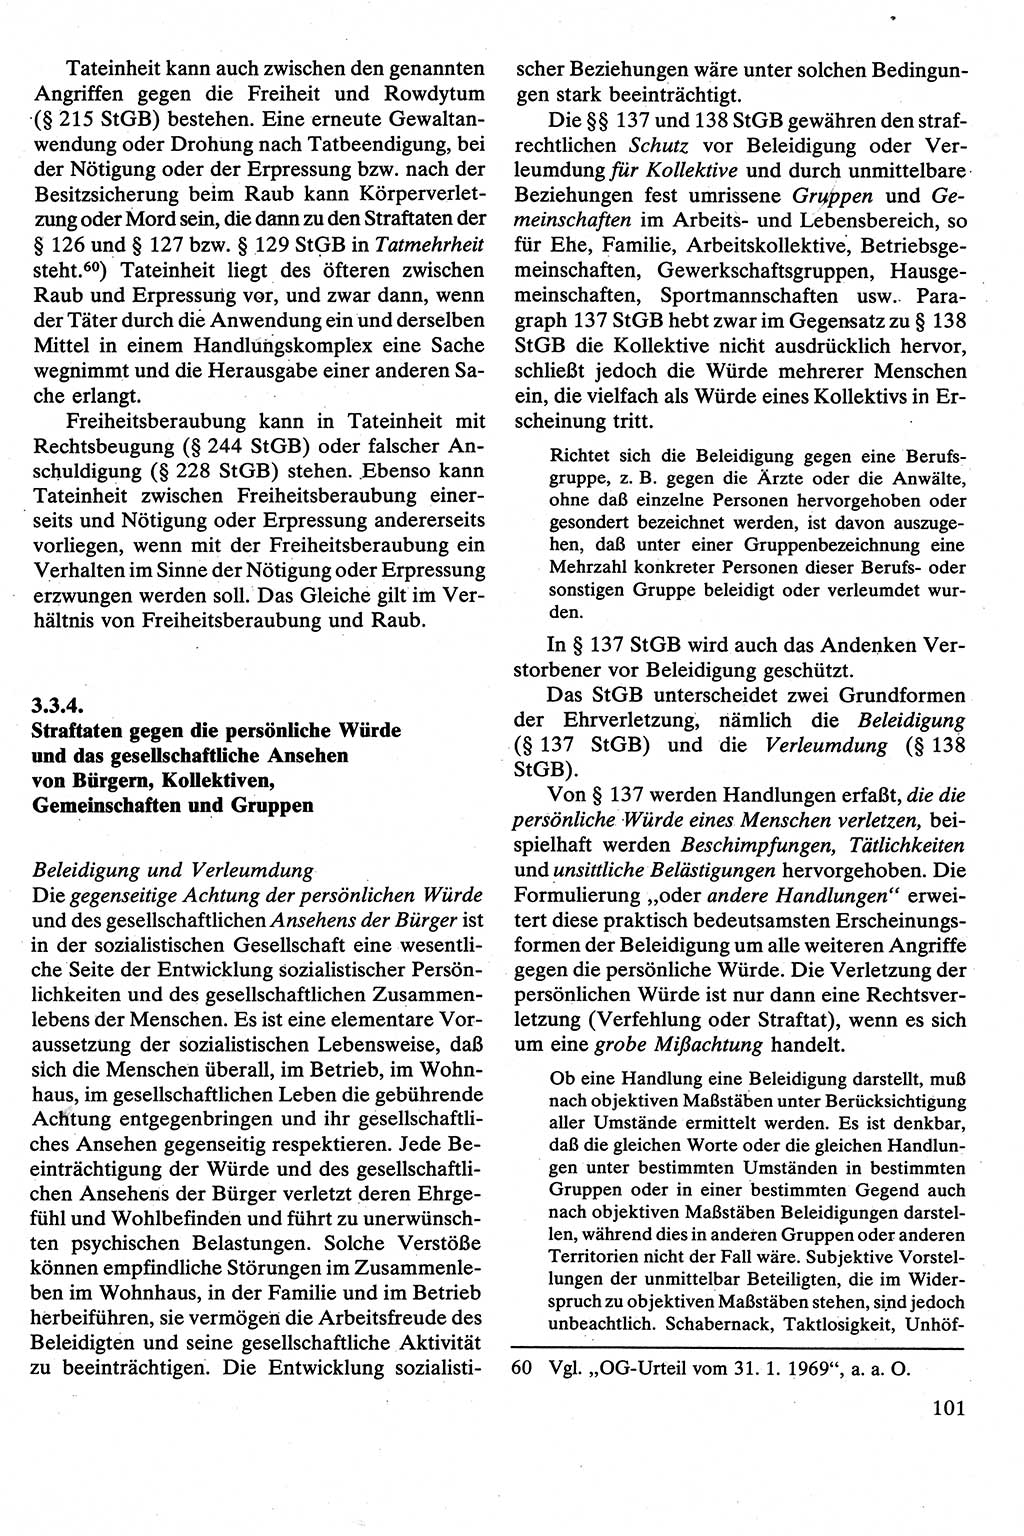 Strafrecht [Deutsche Demokratische Republik (DDR)], Besonderer Teil, Lehrbuch 1981, Seite 101 (Strafr. DDR BT Lb. 1981, S. 101)